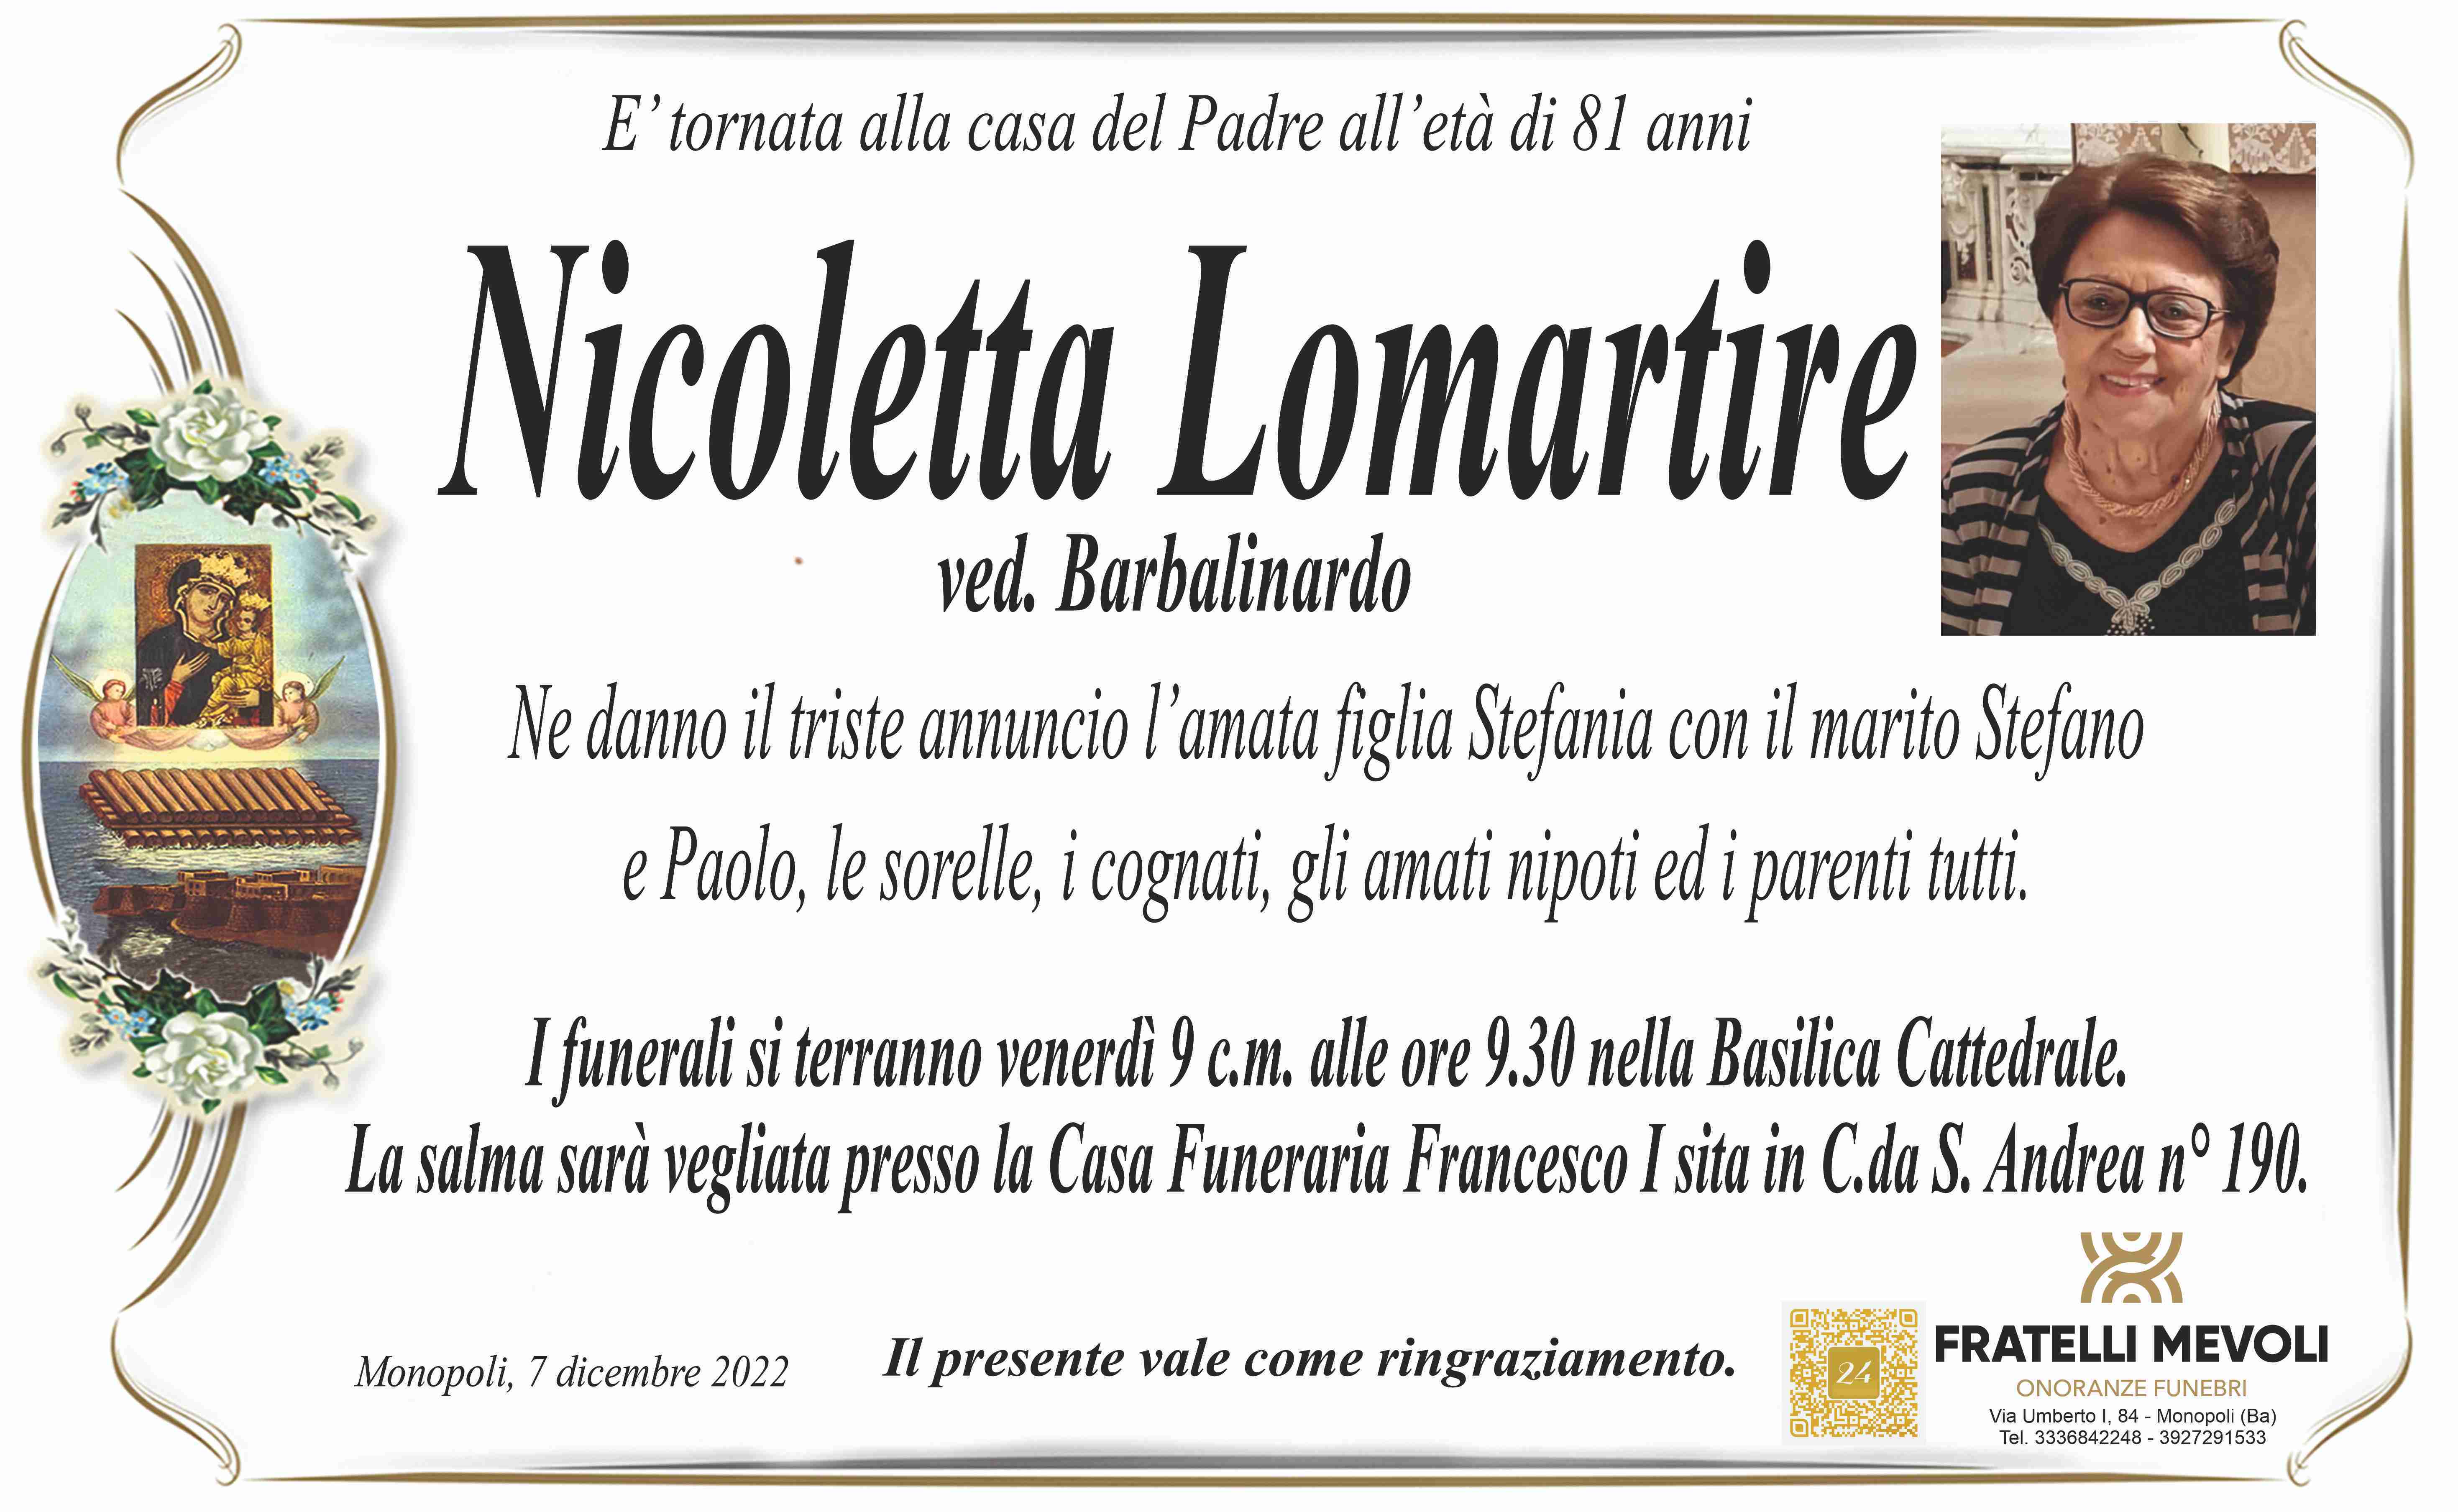 Nicoletta Lomartire